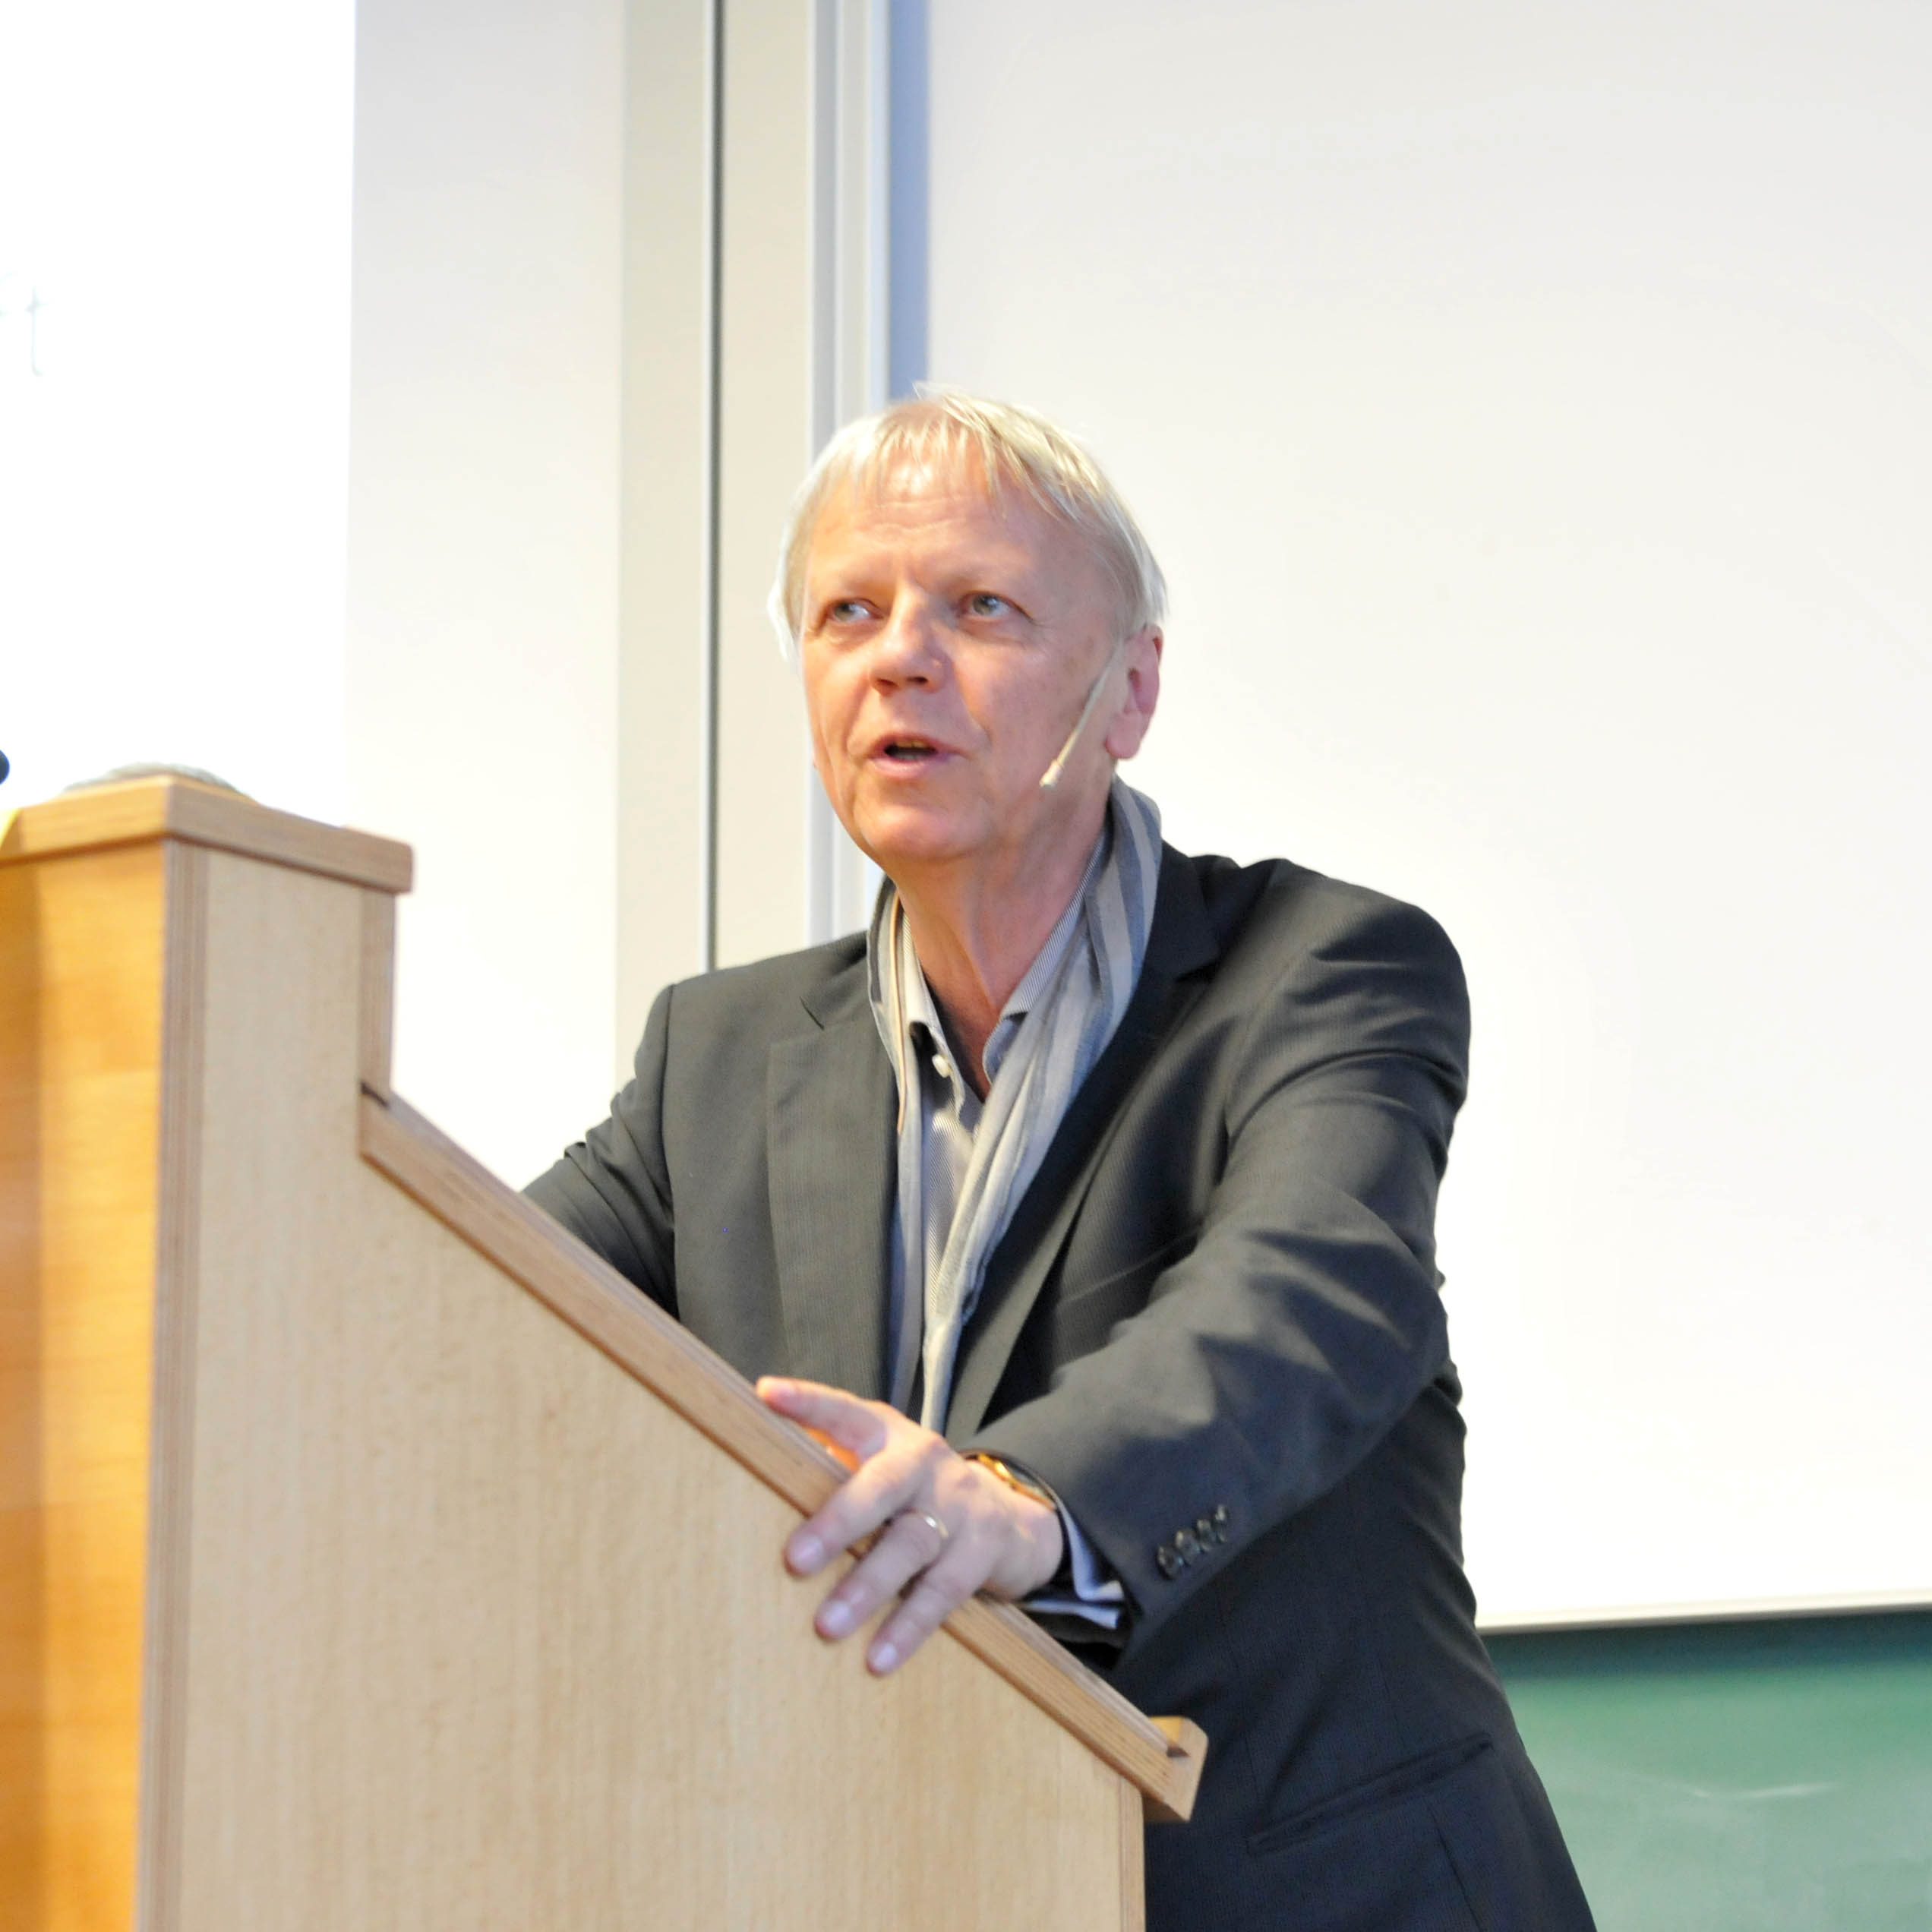 Prof. Dr. Lucian Hölscher - erster Hans-Blumenberg-Gastprofessor